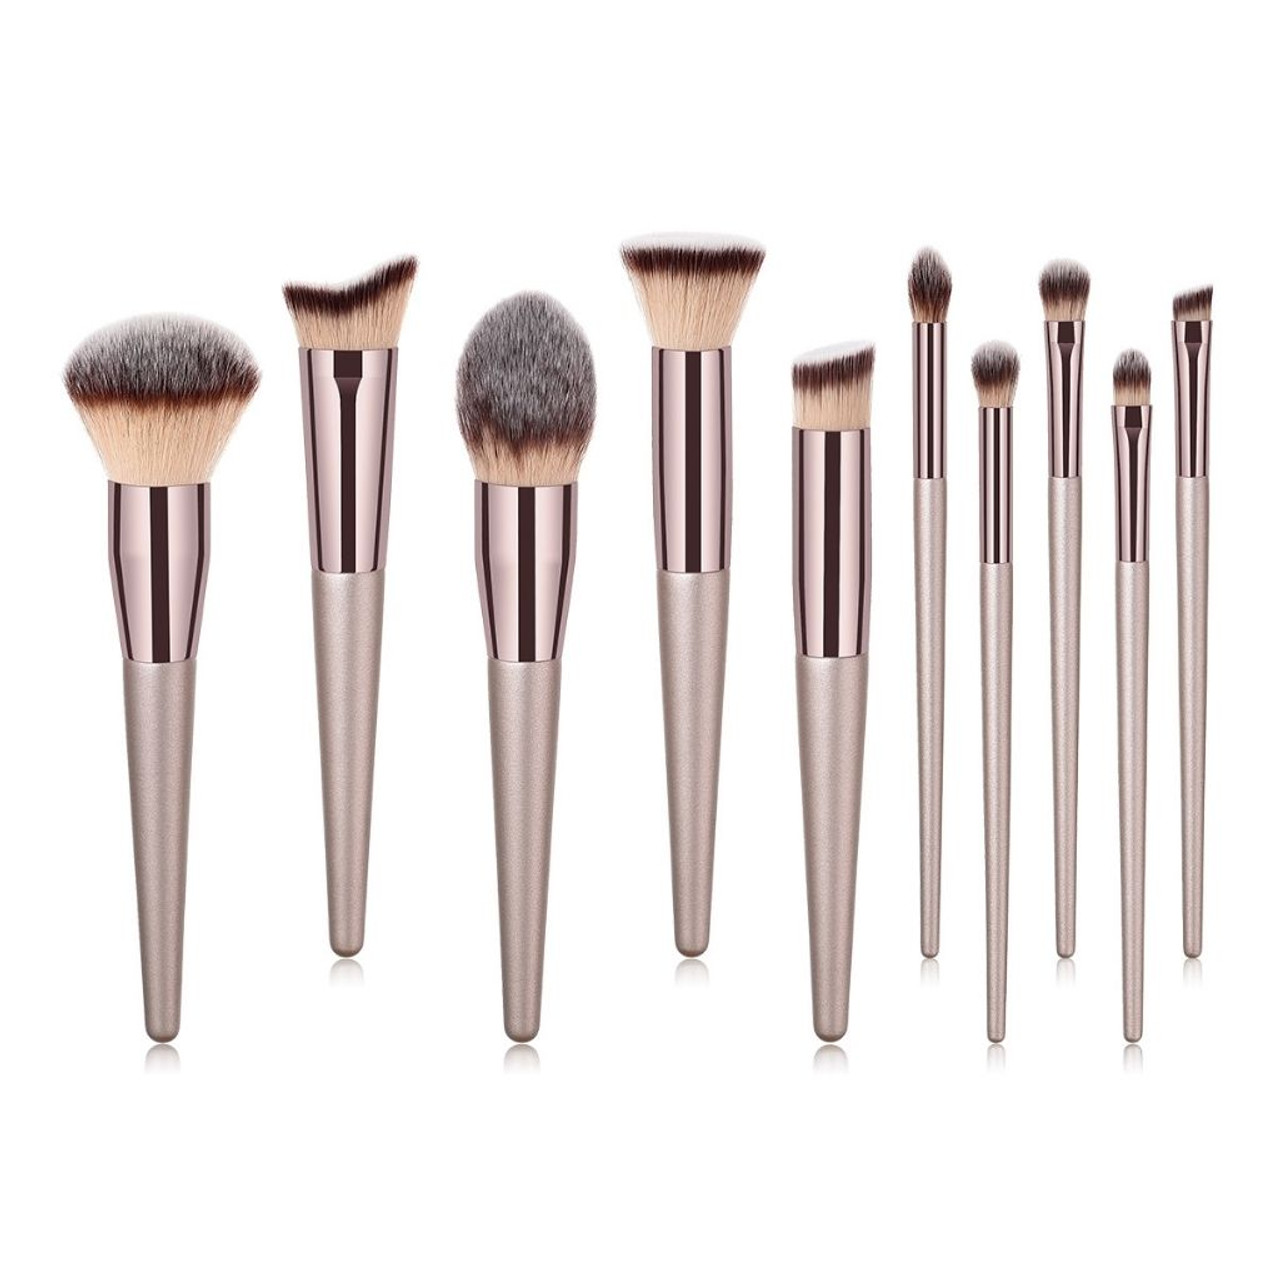 10-Piece Professional Makeup Brush Set product image